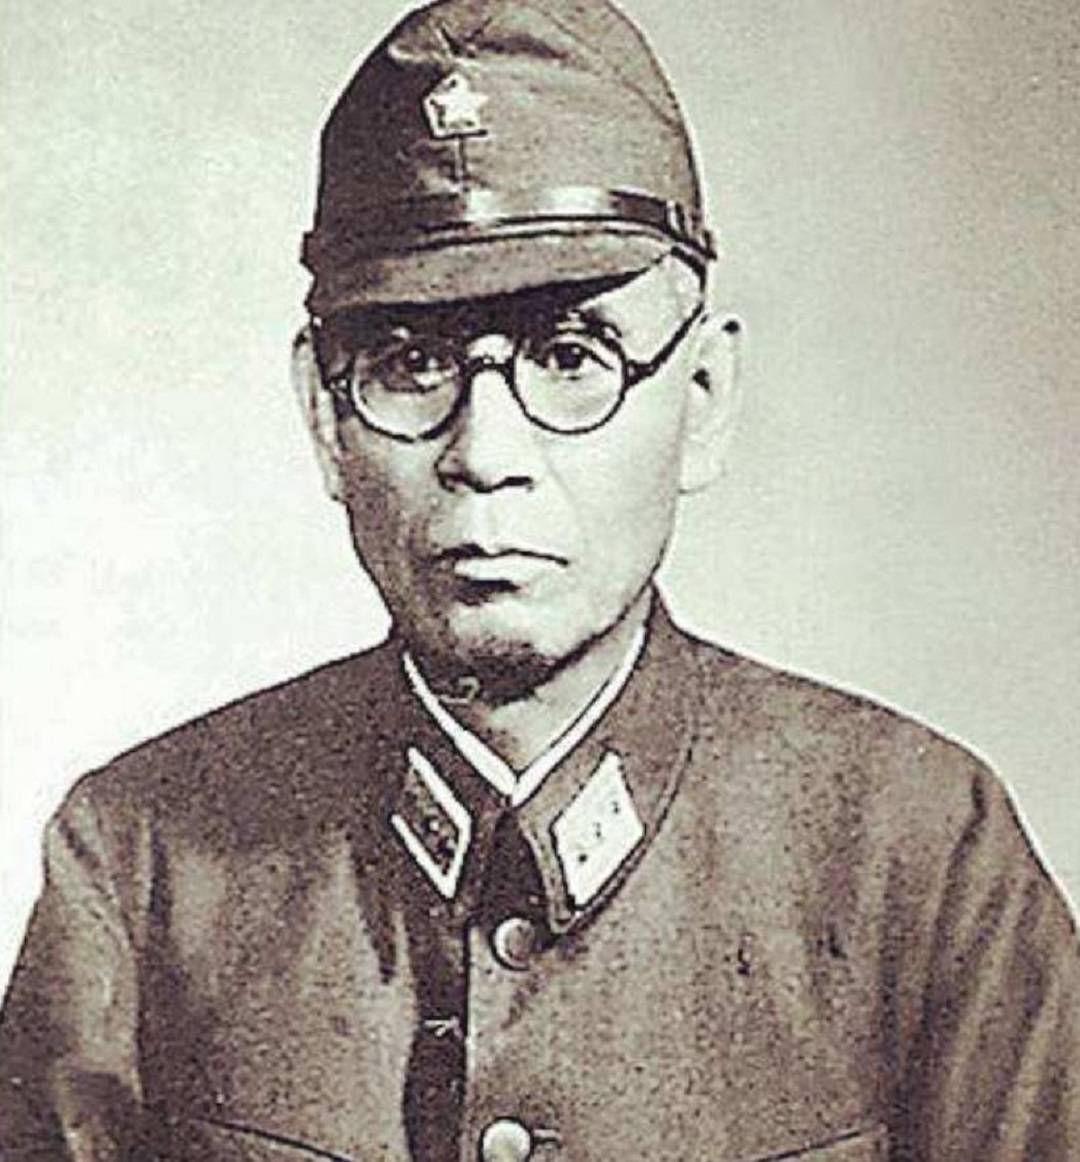 日军总司令冈村宁次,无罪释放活到82岁,他的子女下场如何?